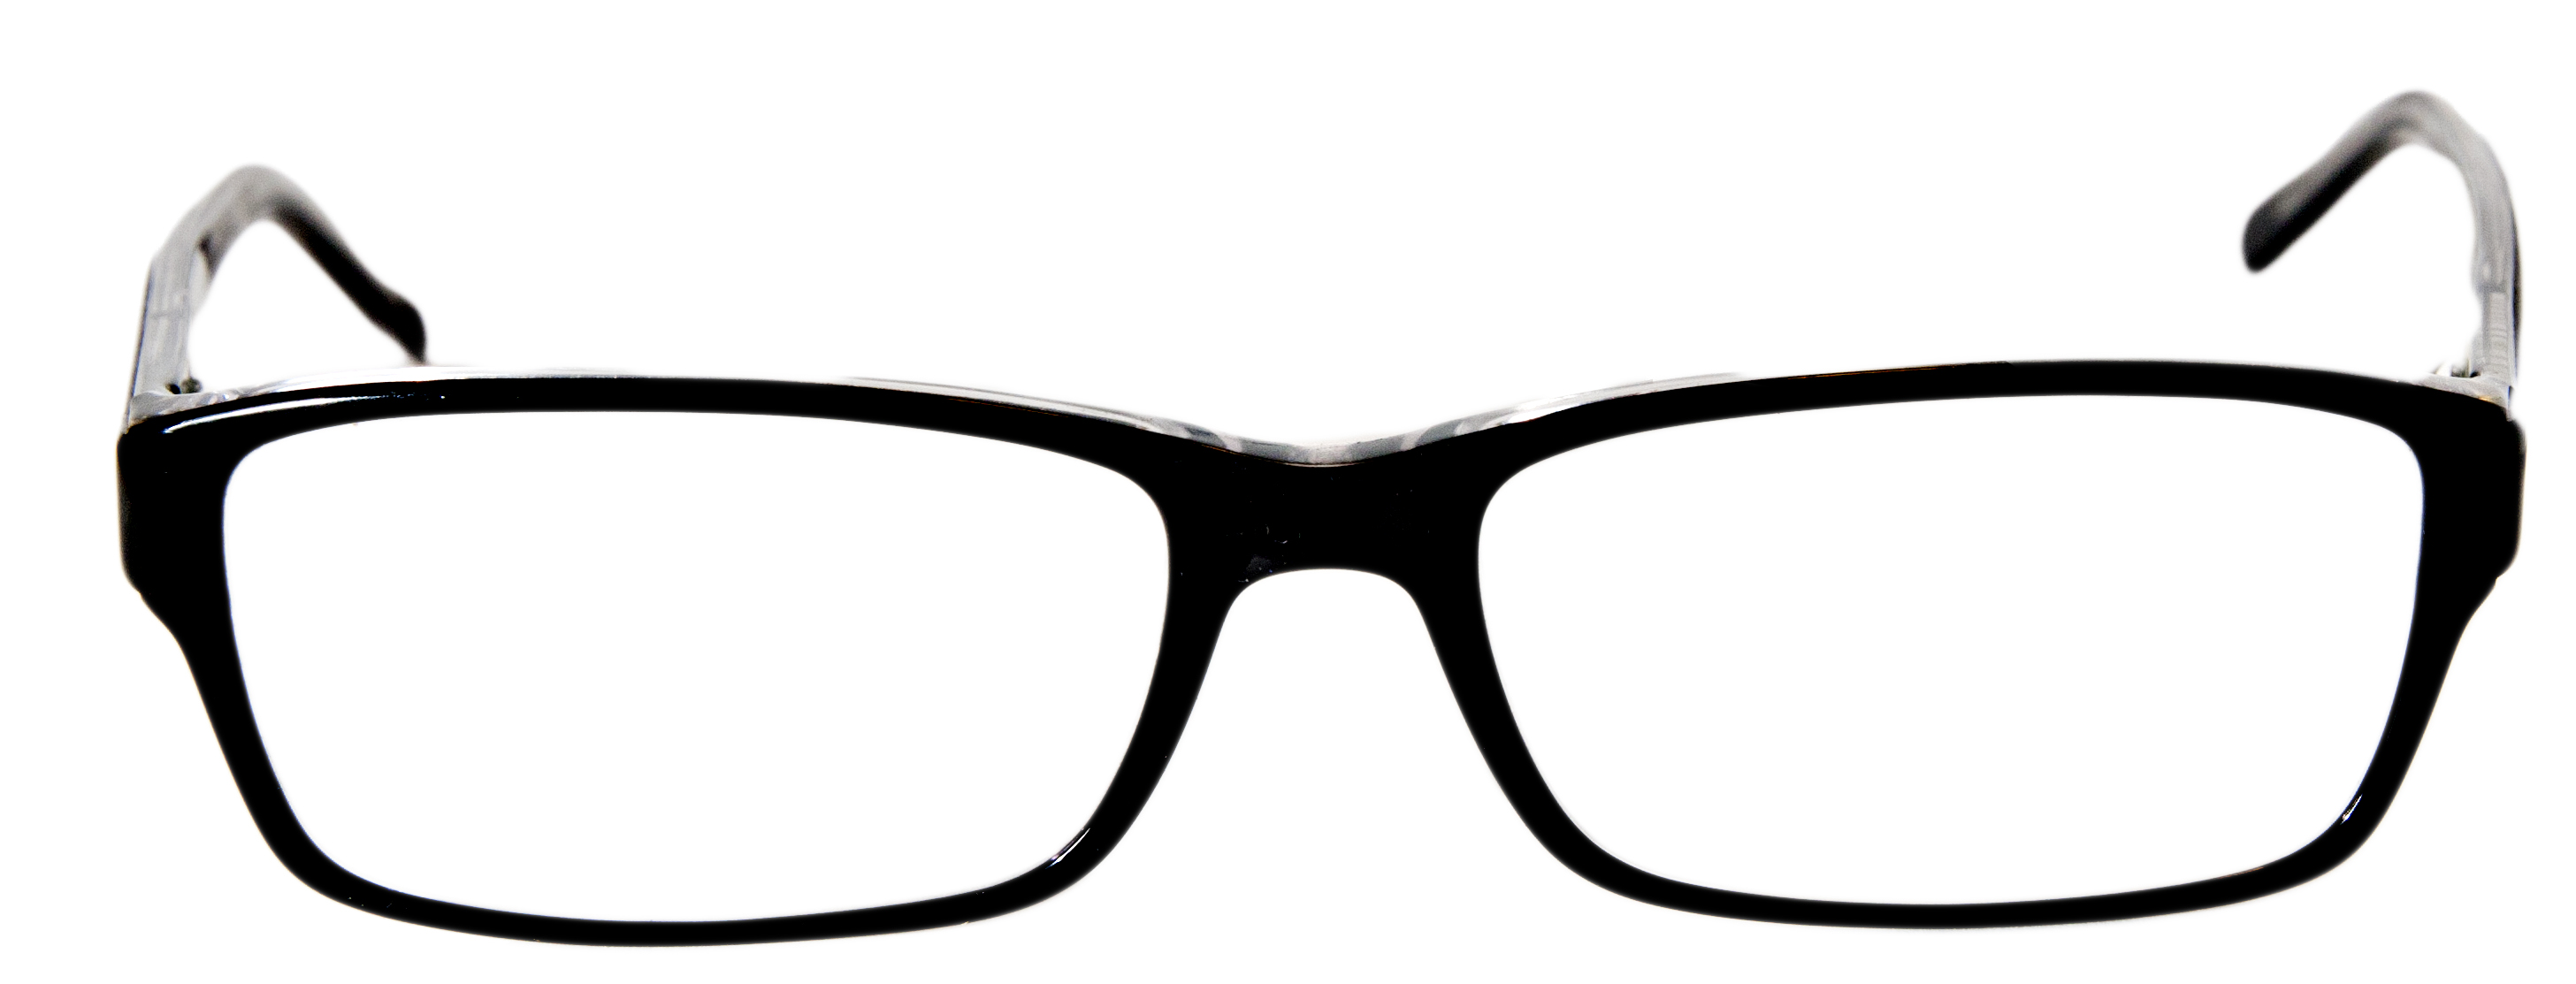 Glasses #7